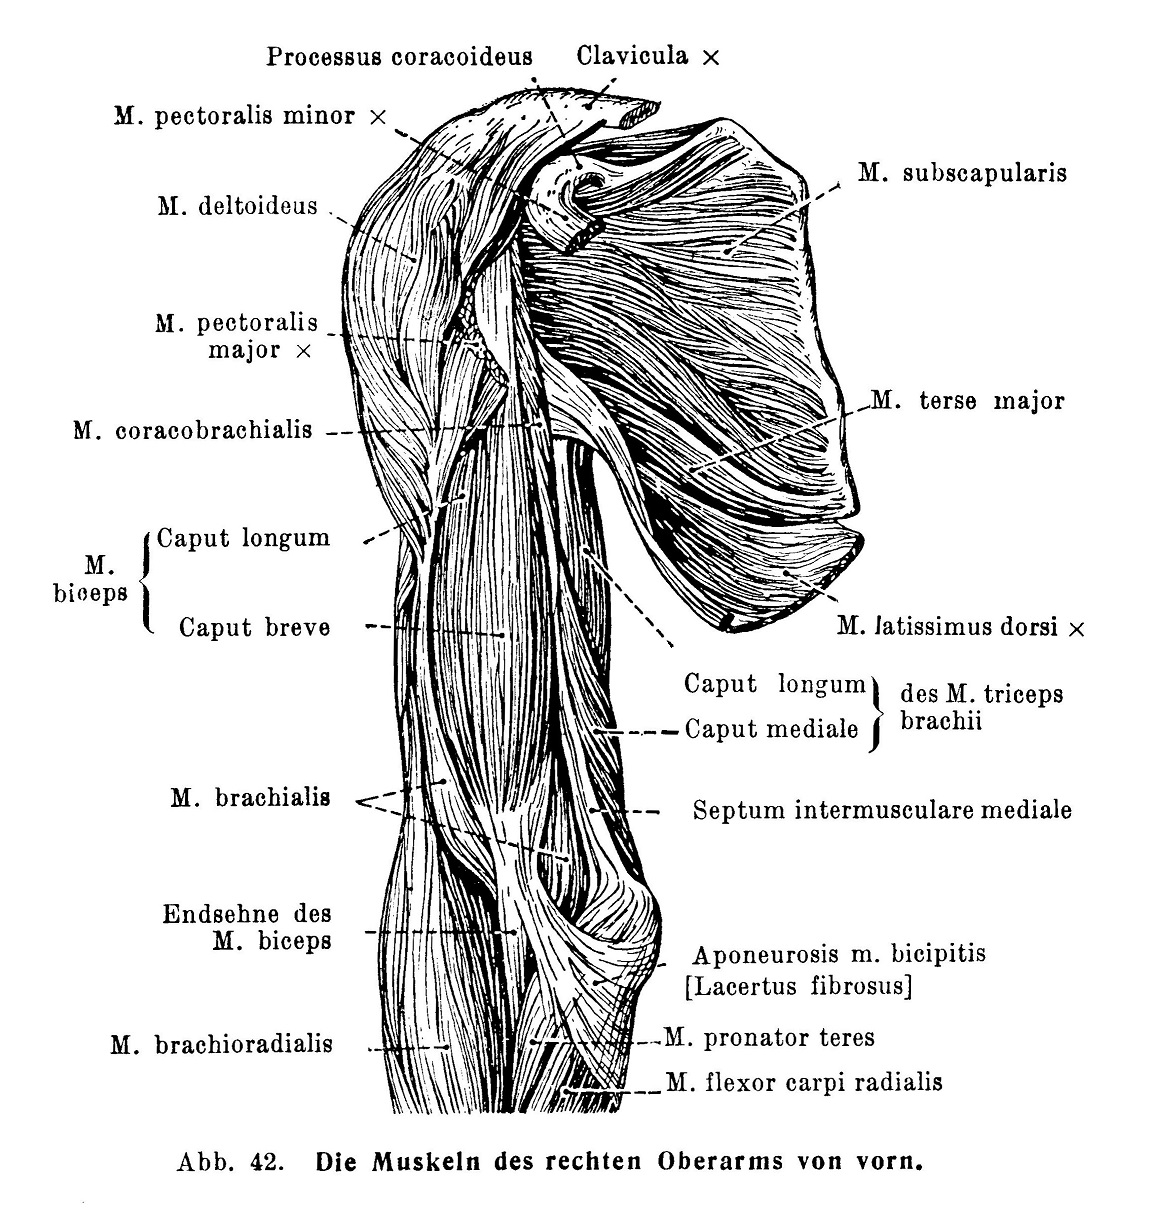 Die Muskelin des rechten Oberarms von vorn